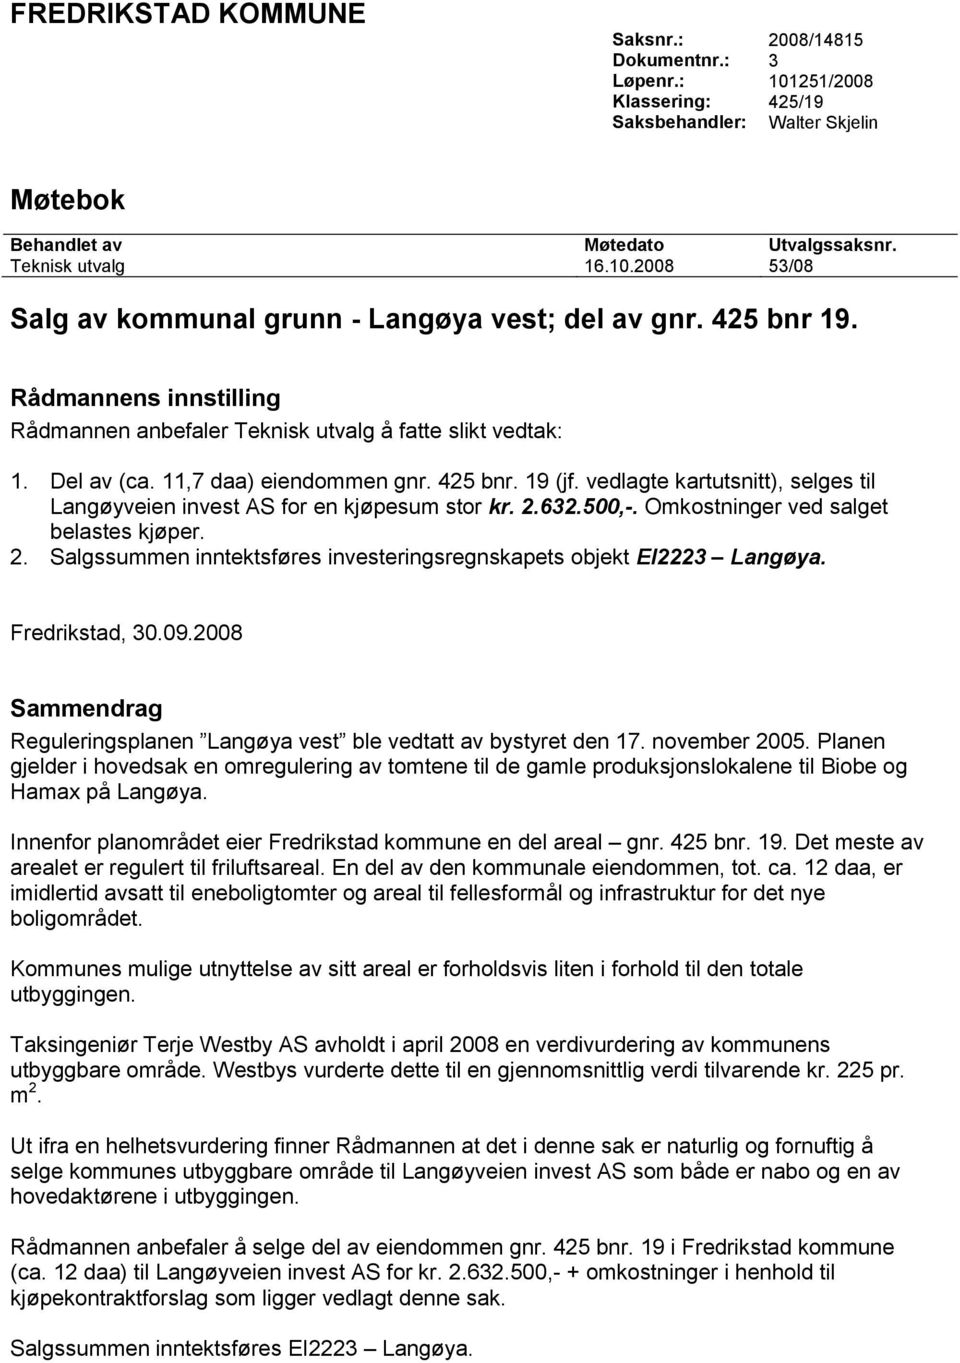 vedlagte kartutsnitt), selges til Langøyveien invest AS for en kjøpesum stor kr. 2.632.500,-. Omkostninger ved salget belastes kjøper. 2. Salgssummen inntektsføres investeringsregnskapets objekt EI2223 Langøya.